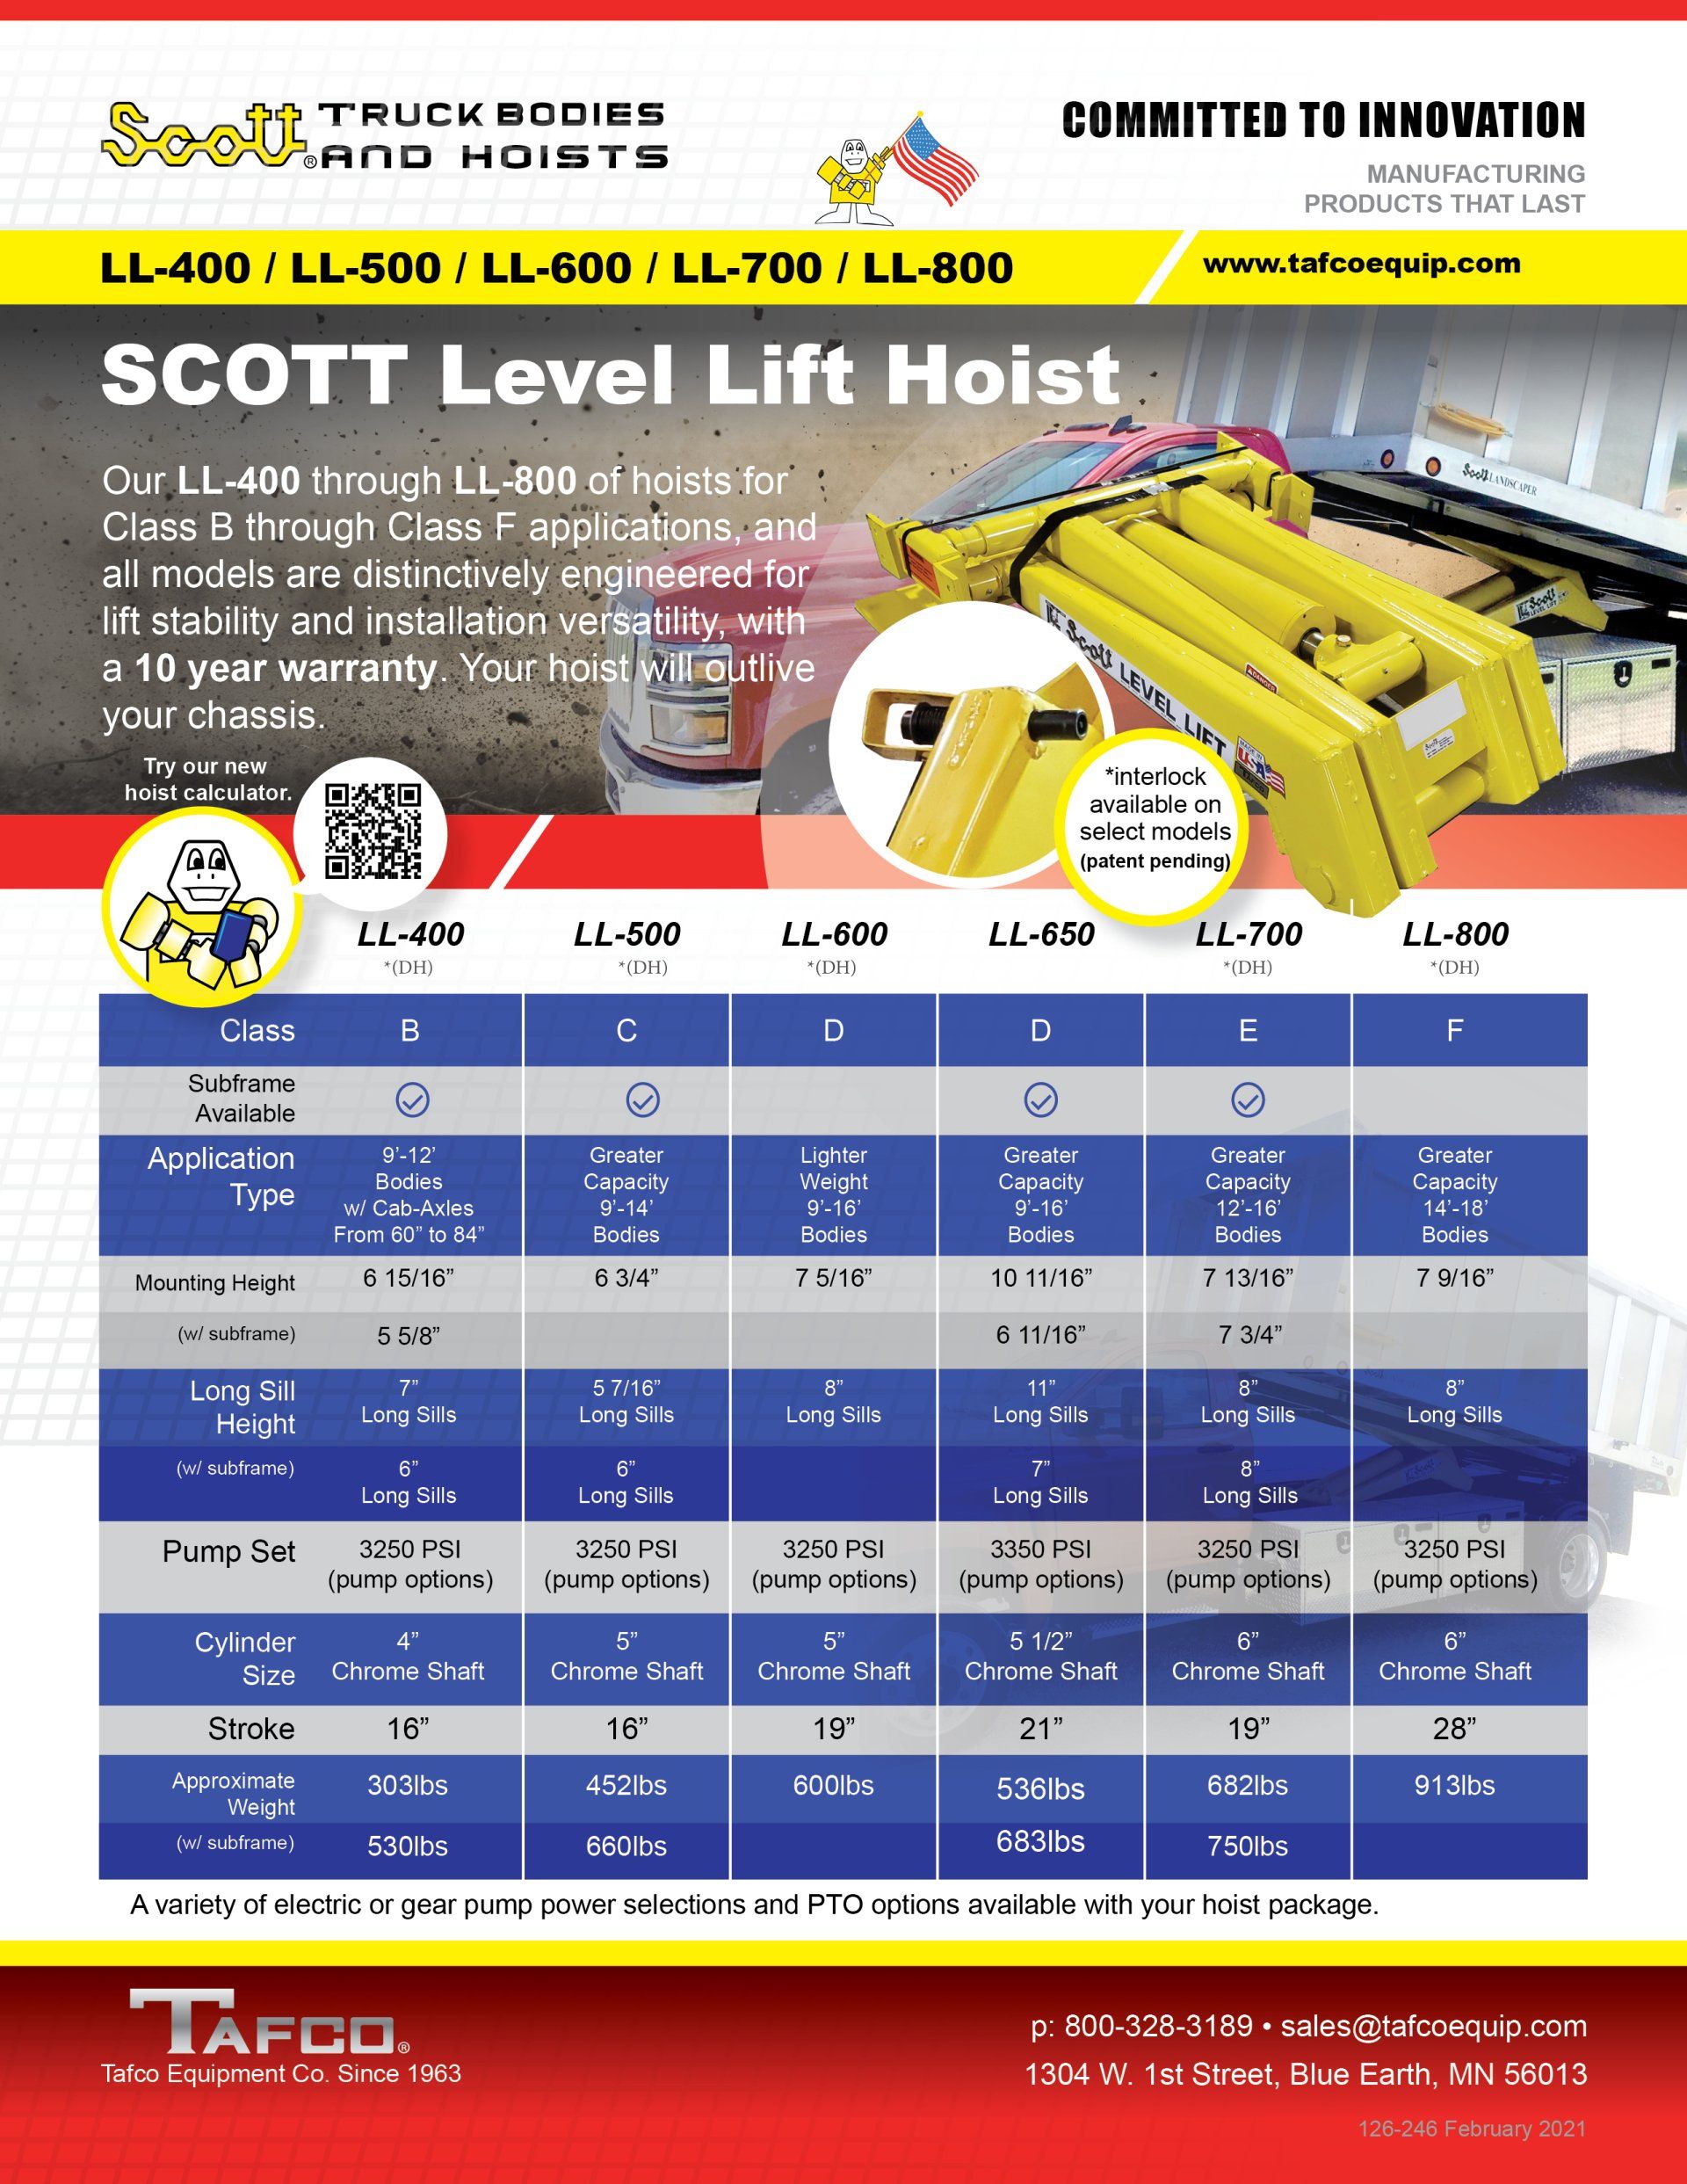 Scott Level Lift Hoist Brochure LL-400 to LL-800